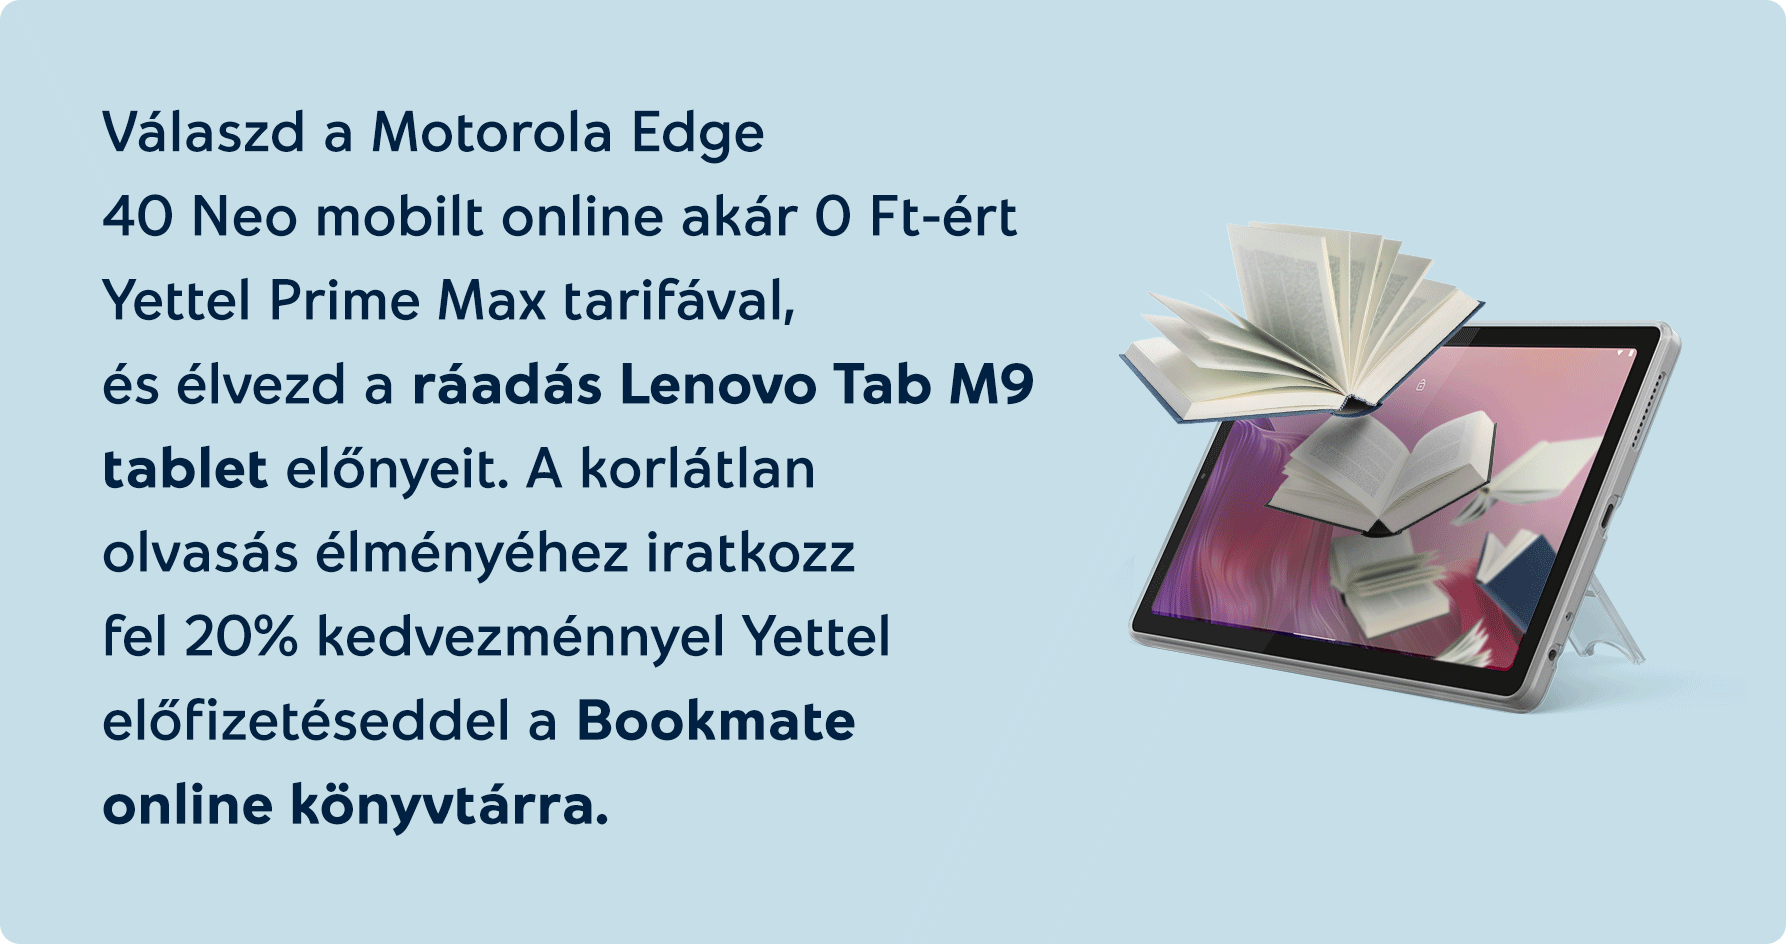 Válaszd online a Motorola Edge 40 Neo mobilt online akár 0 Ft-ért Yettel Prime Max tarifával, és élvezd a ráadás Lenovo Tab M9 tablet előnyeit . A korlátlan olvasás élményéhez iratkozz fel 20% kedvezménnyel előfizetéseddel a Bookmate online könyvtárra